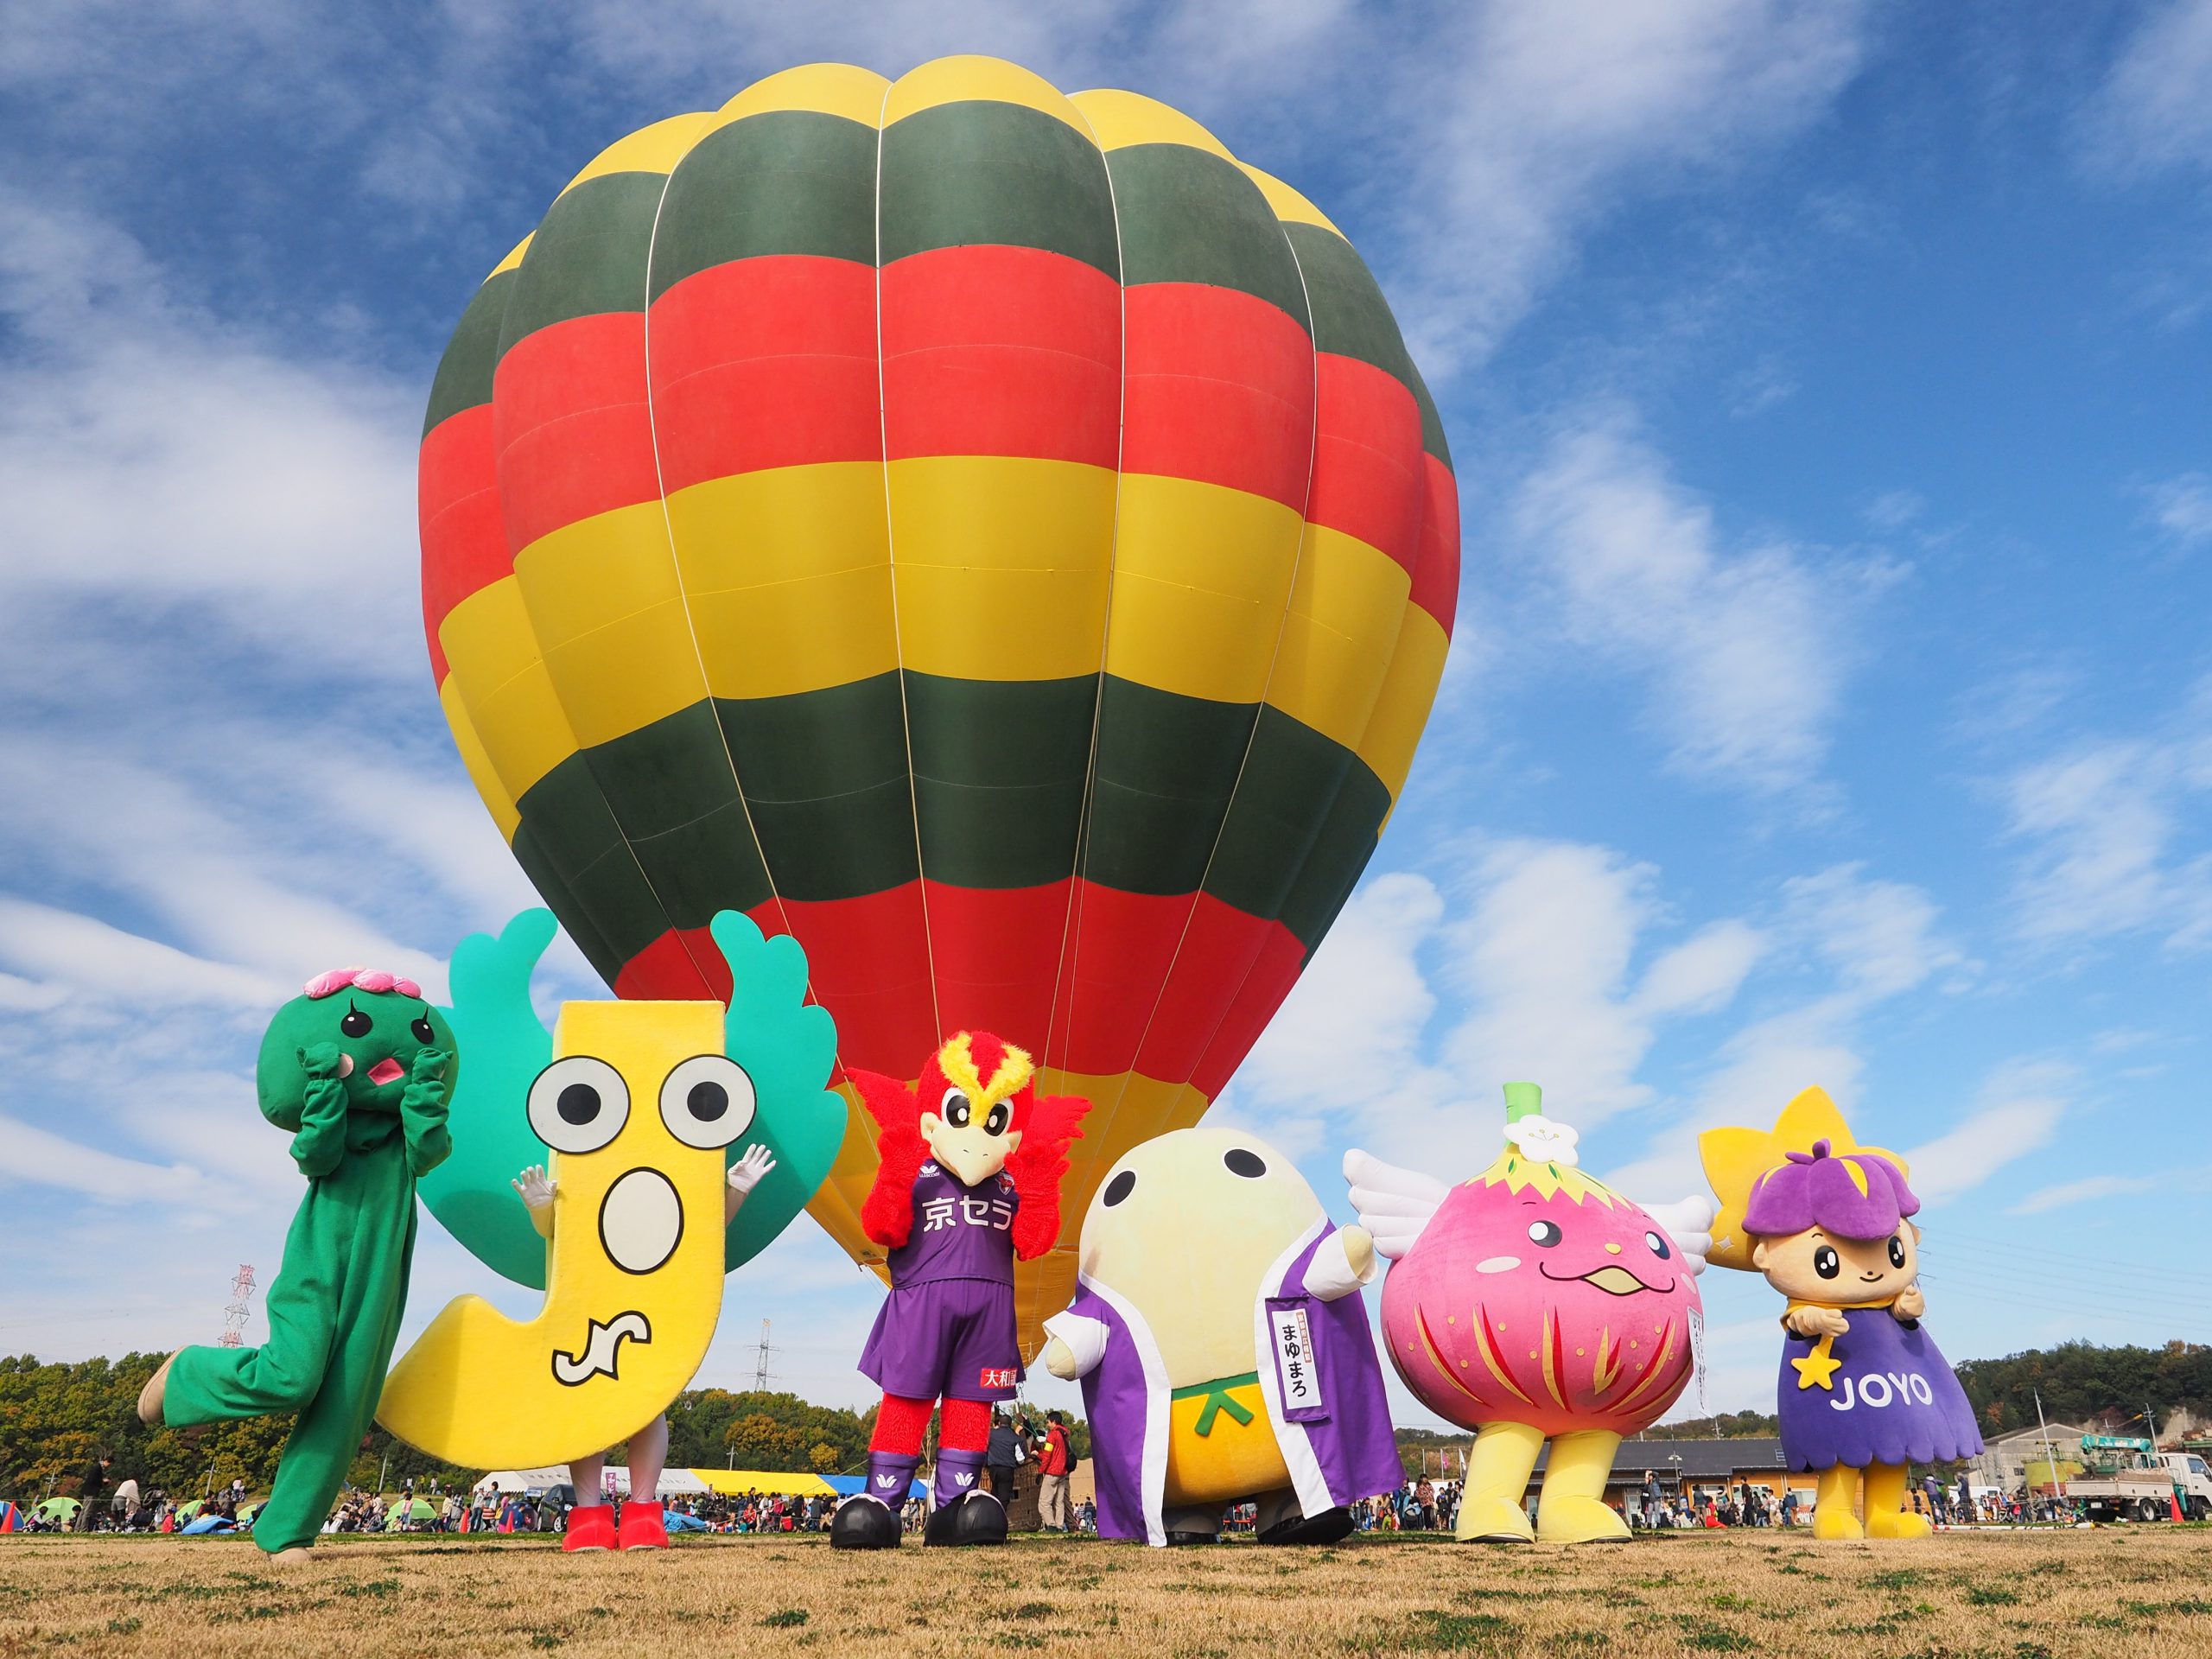 Joyo:Balloon Festival